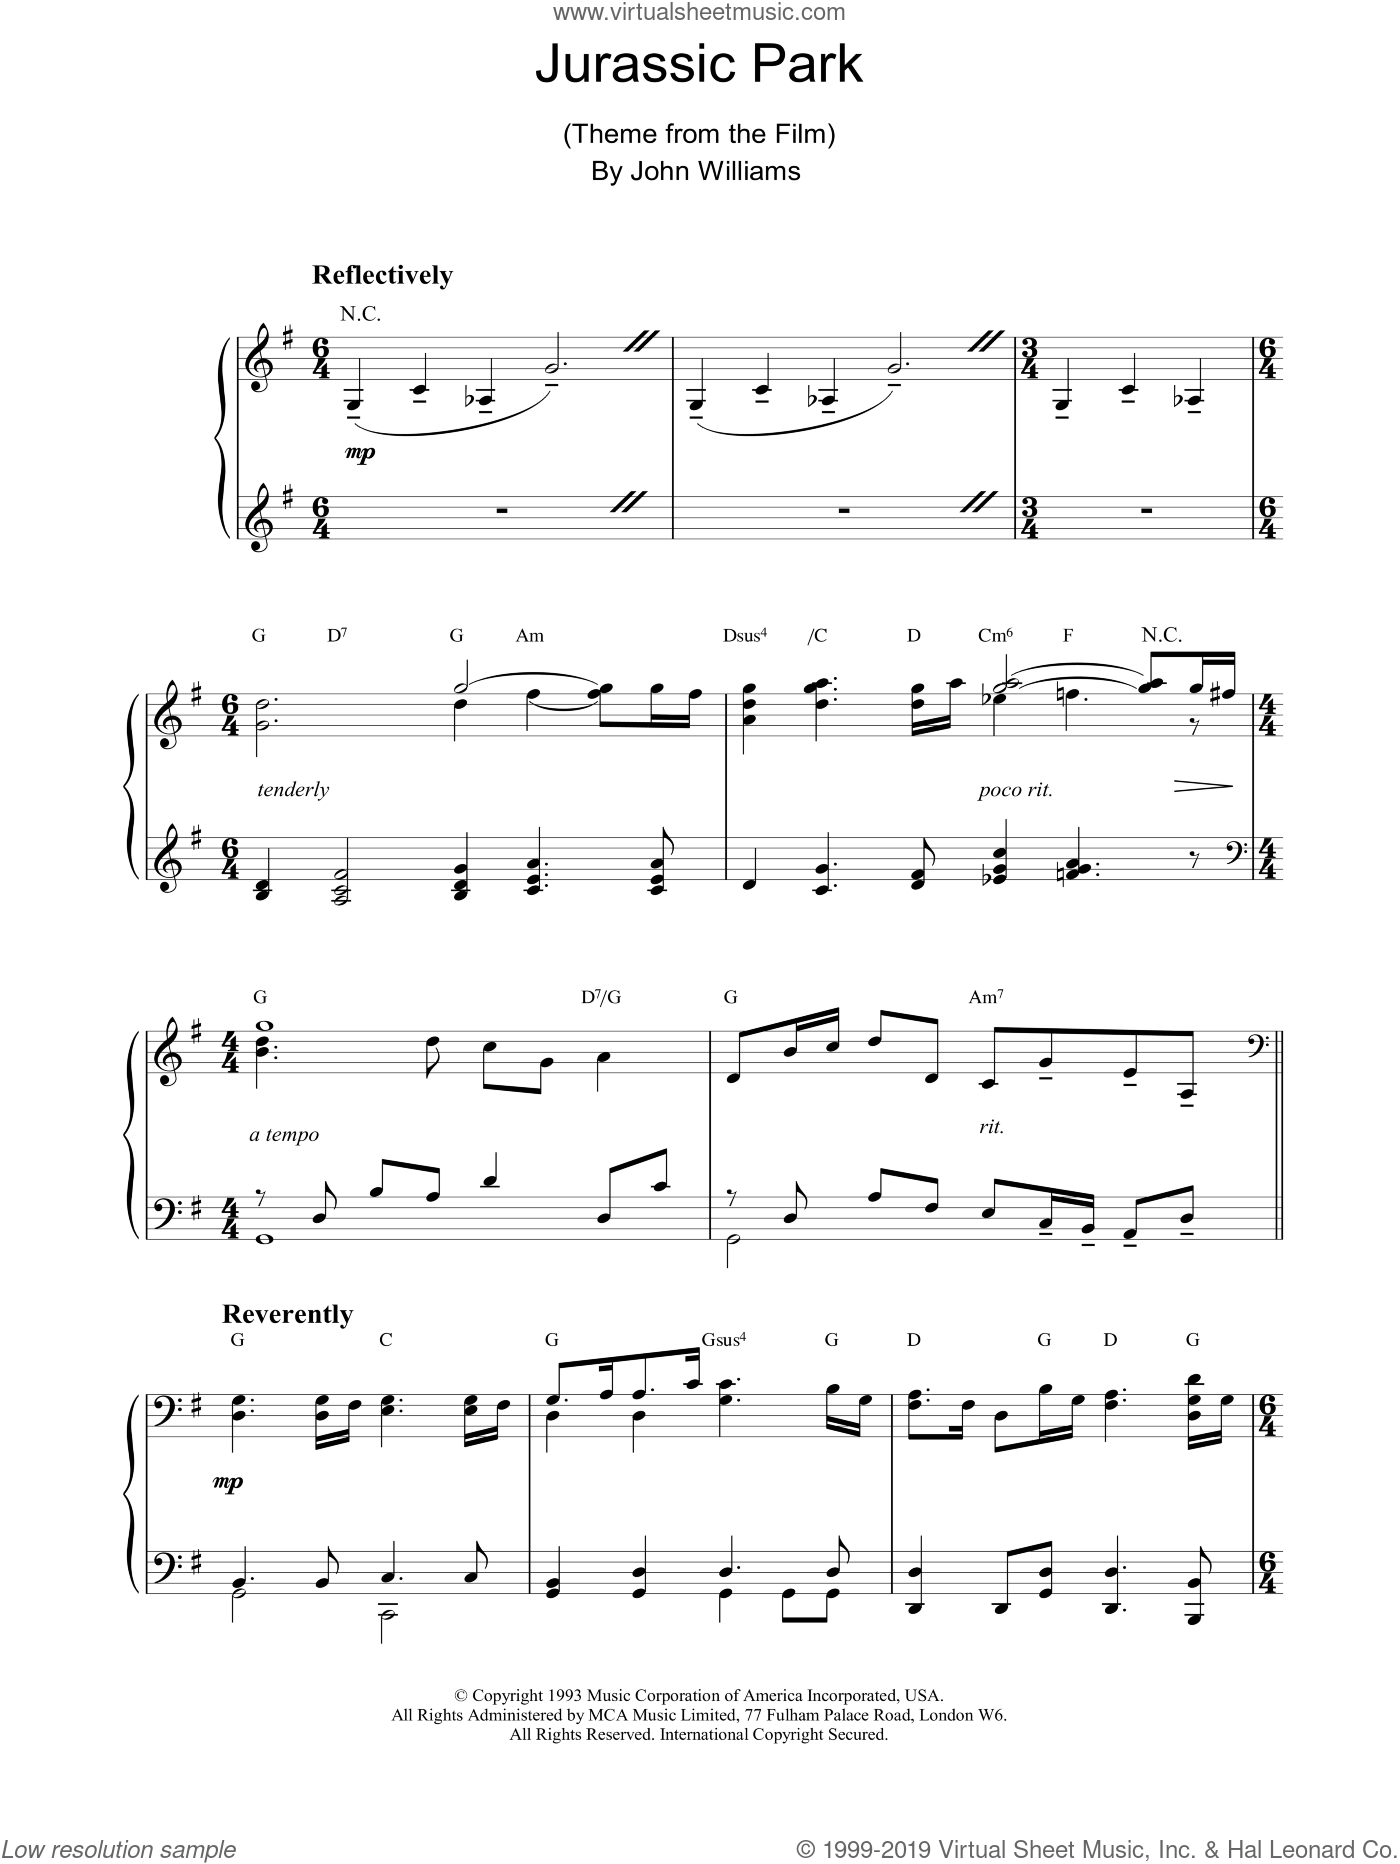 Williams - Jurassic Park sheet music (intermediate) for piano solo